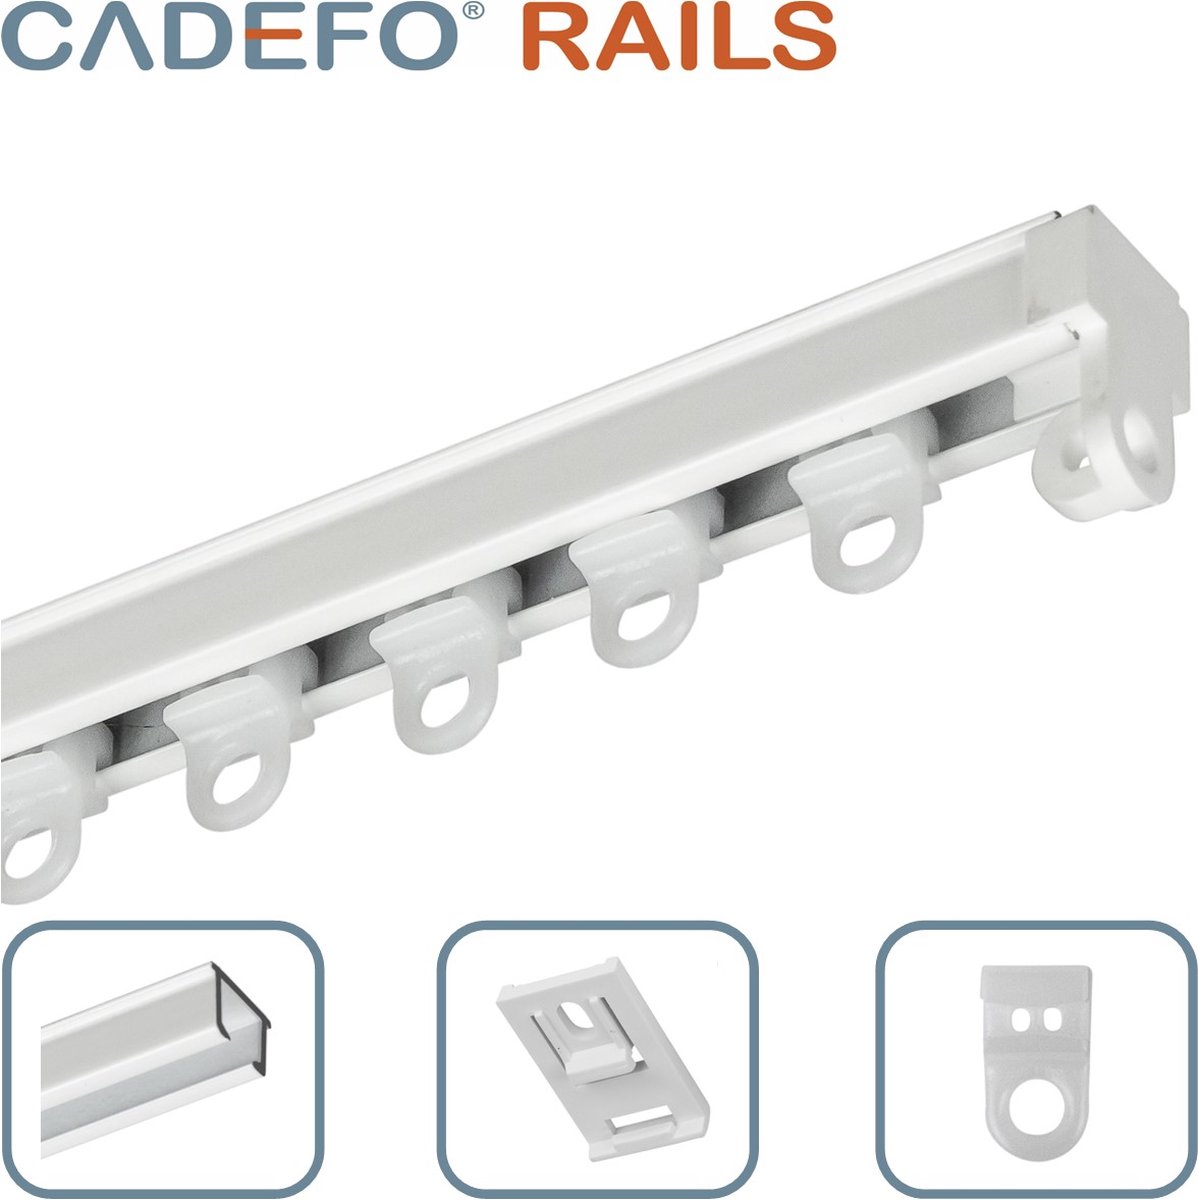 CADEFO RAILS (501 - 550 cm) Gordijnrails - Compleet op maat! - UIT 1 STUK - Leverbaar tot 6 meter - Plafondbevestiging - Lengte 531 cm